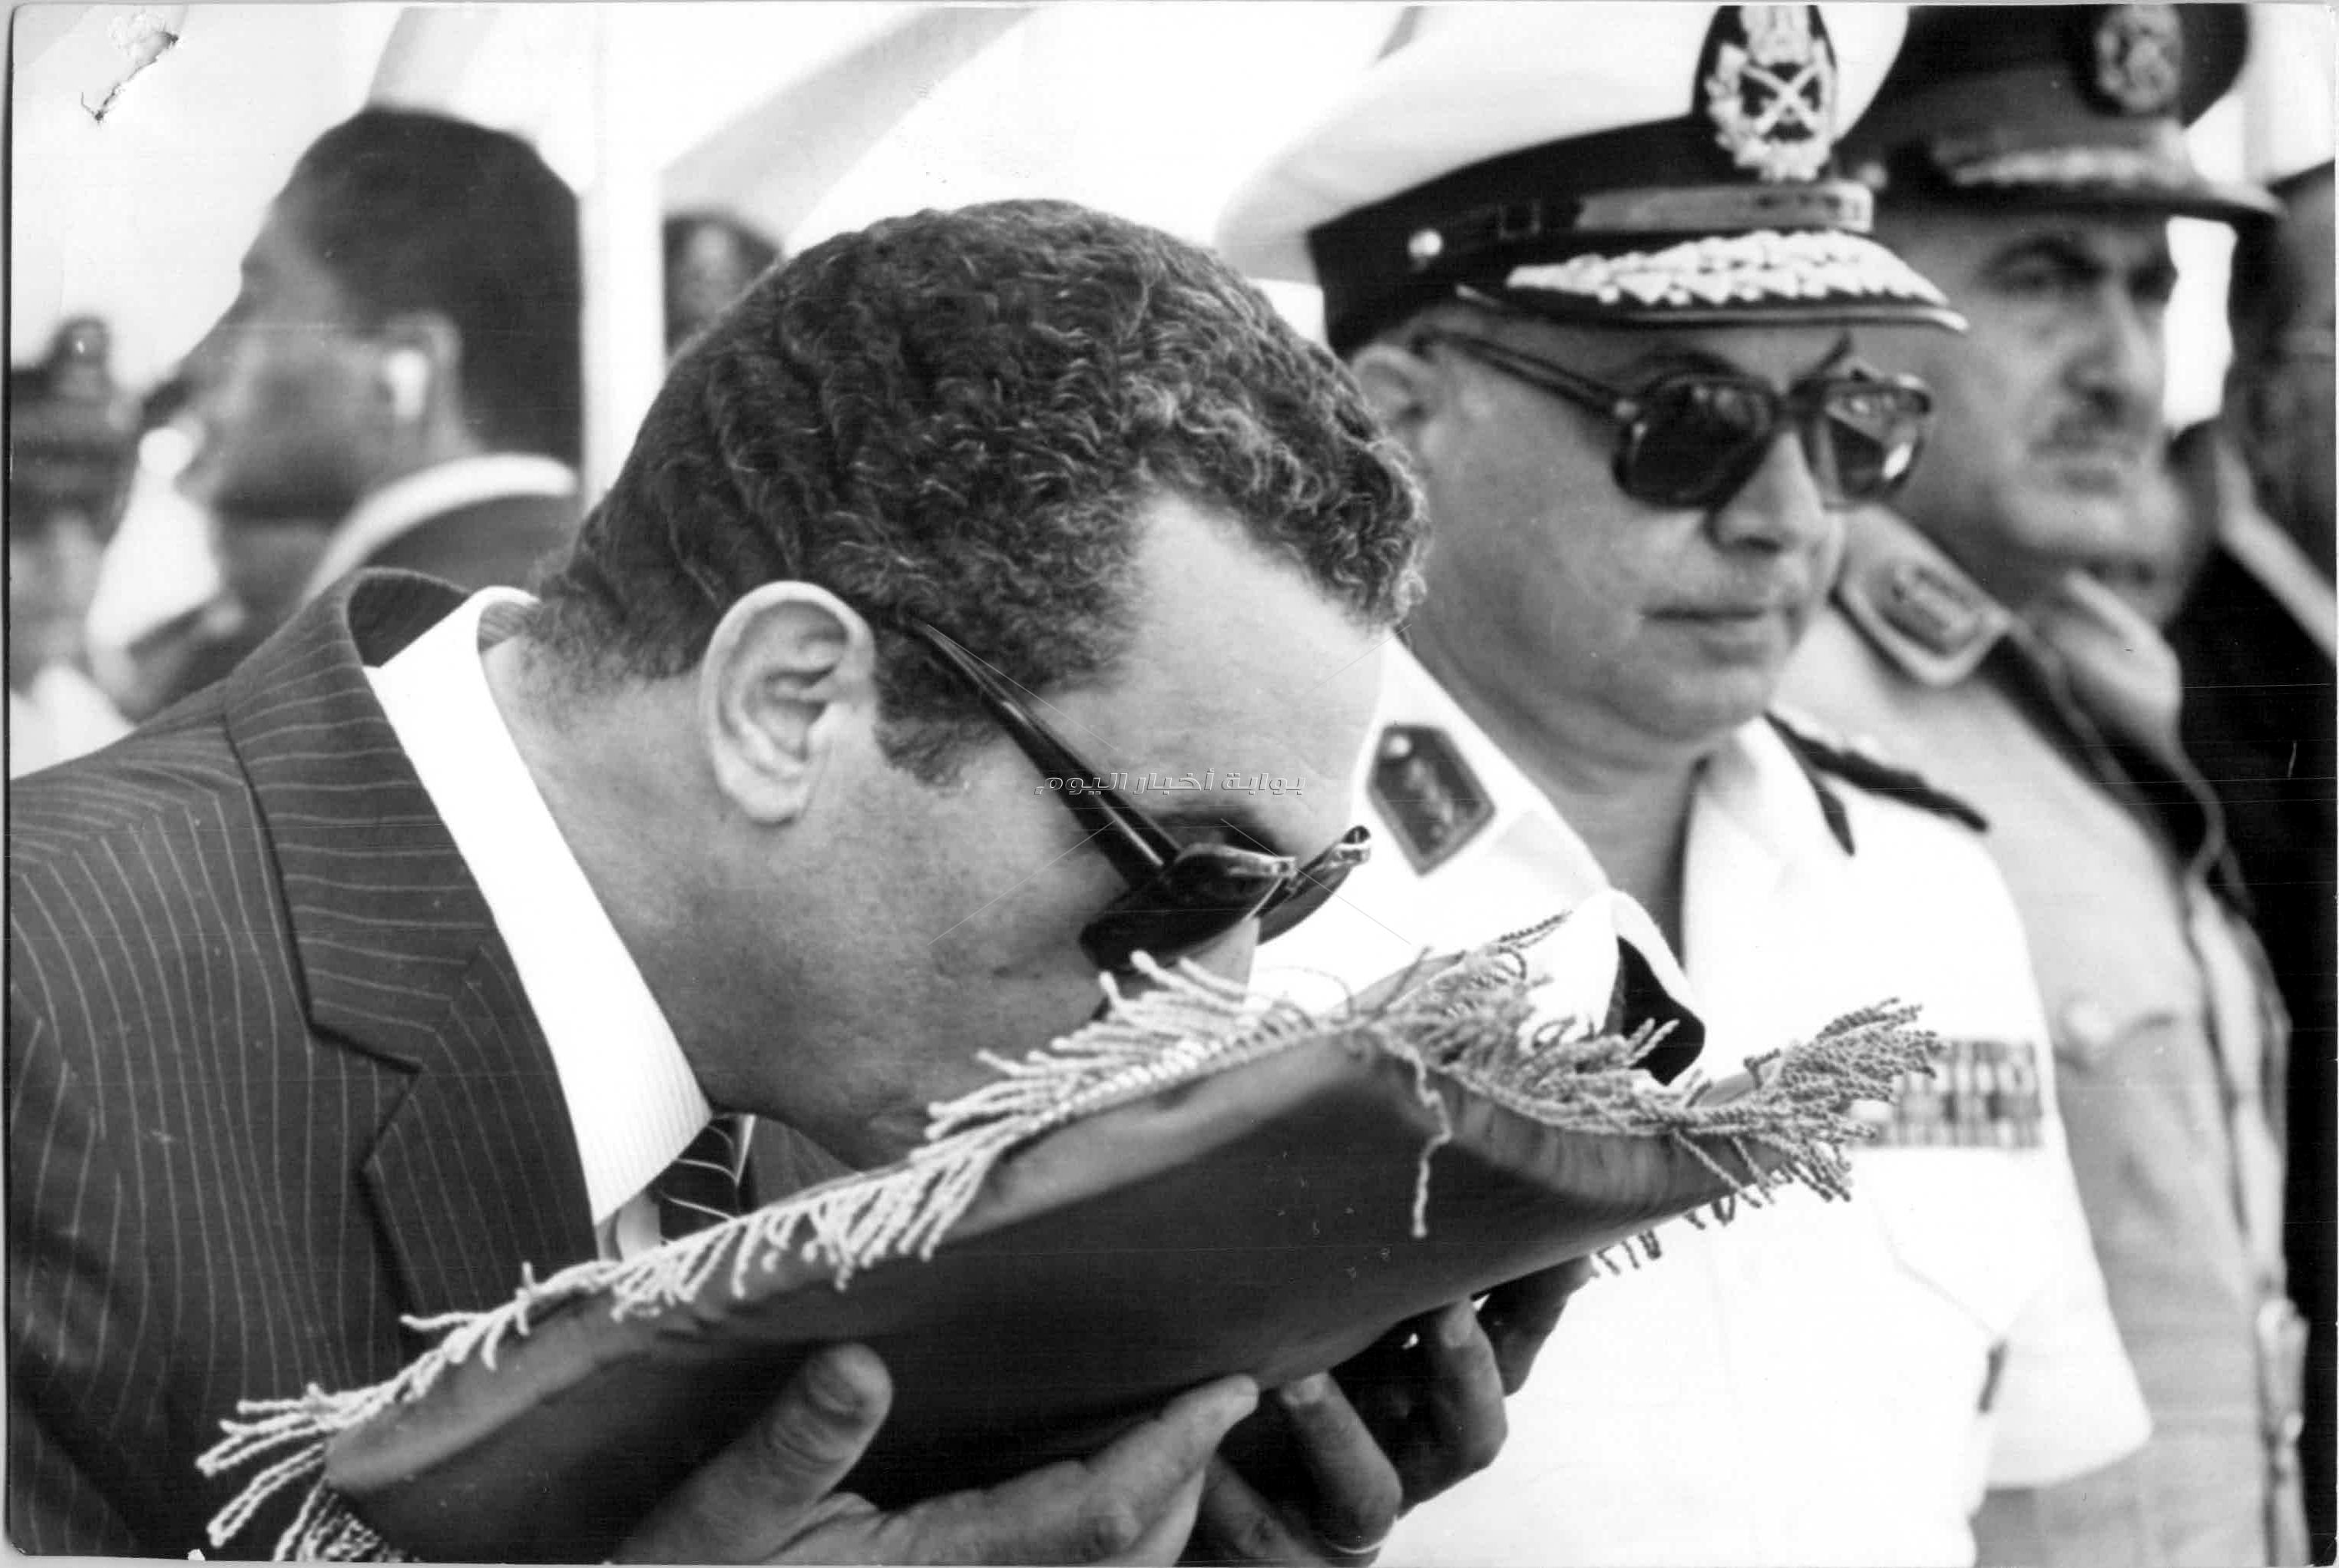 لقطات نادرة في حياة الرئيس الأسبق محمد حسني مبارك